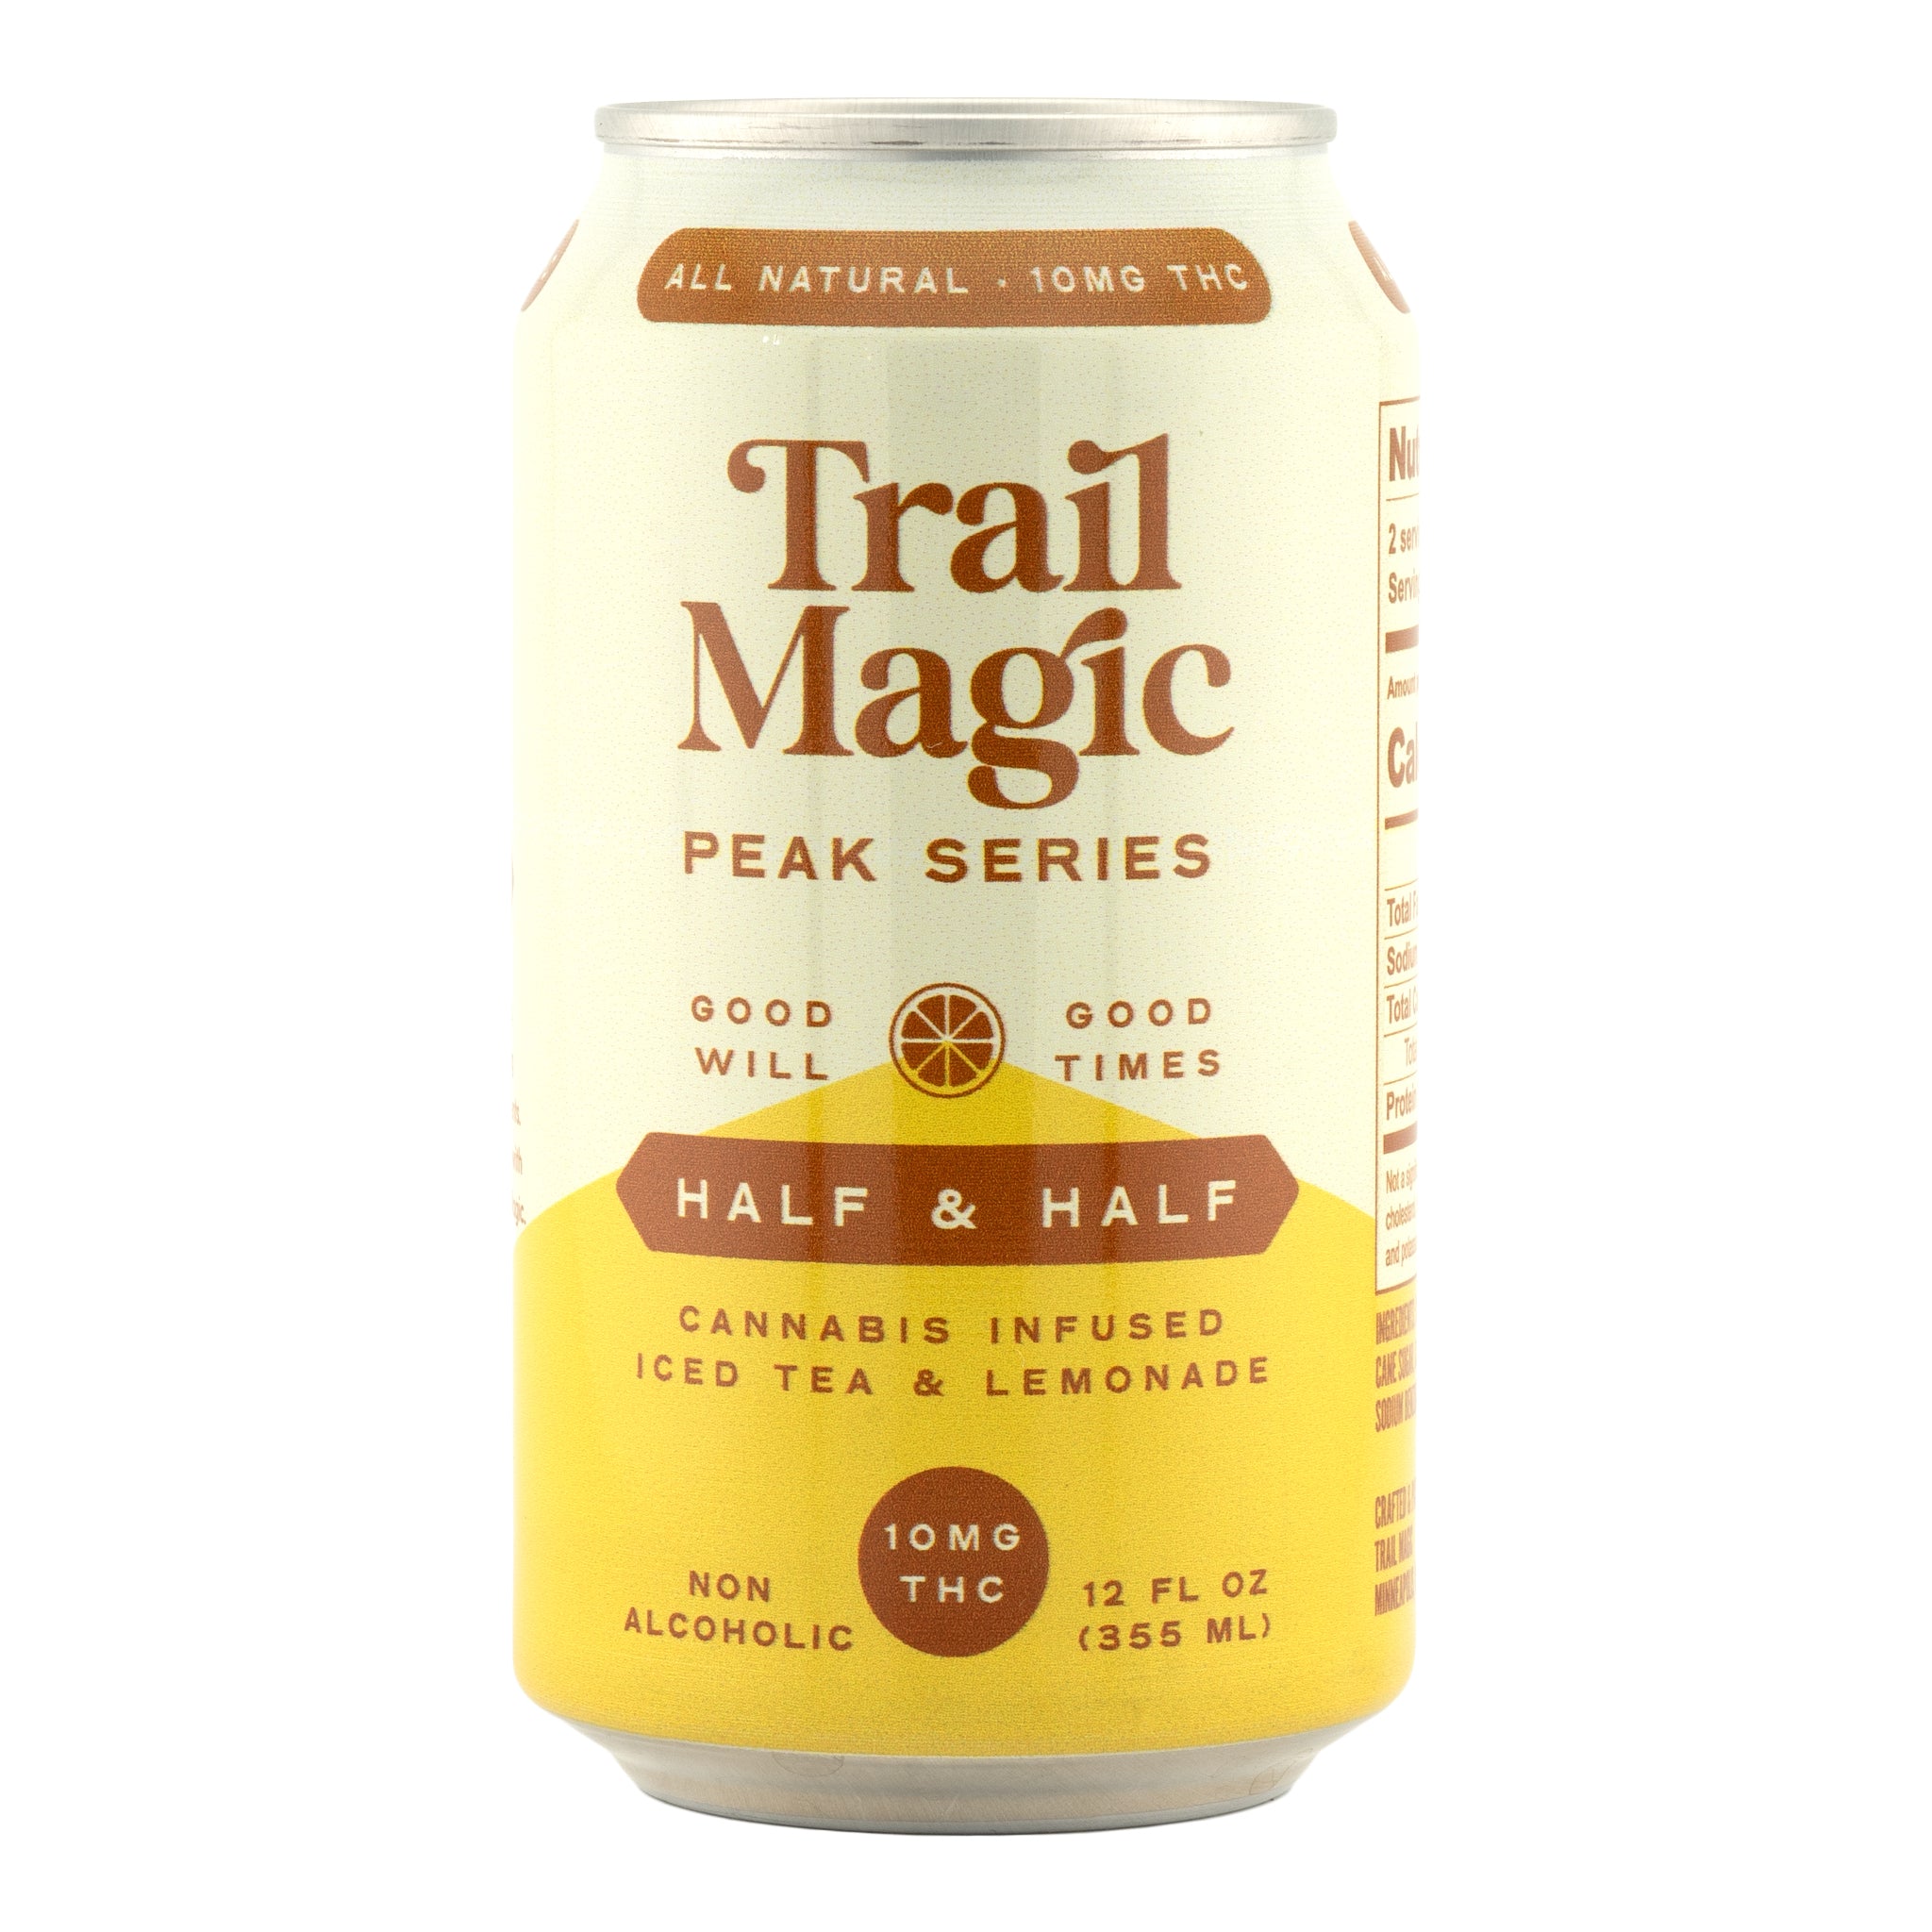 TRAIL MAGIC Peak Series 10 mg THC